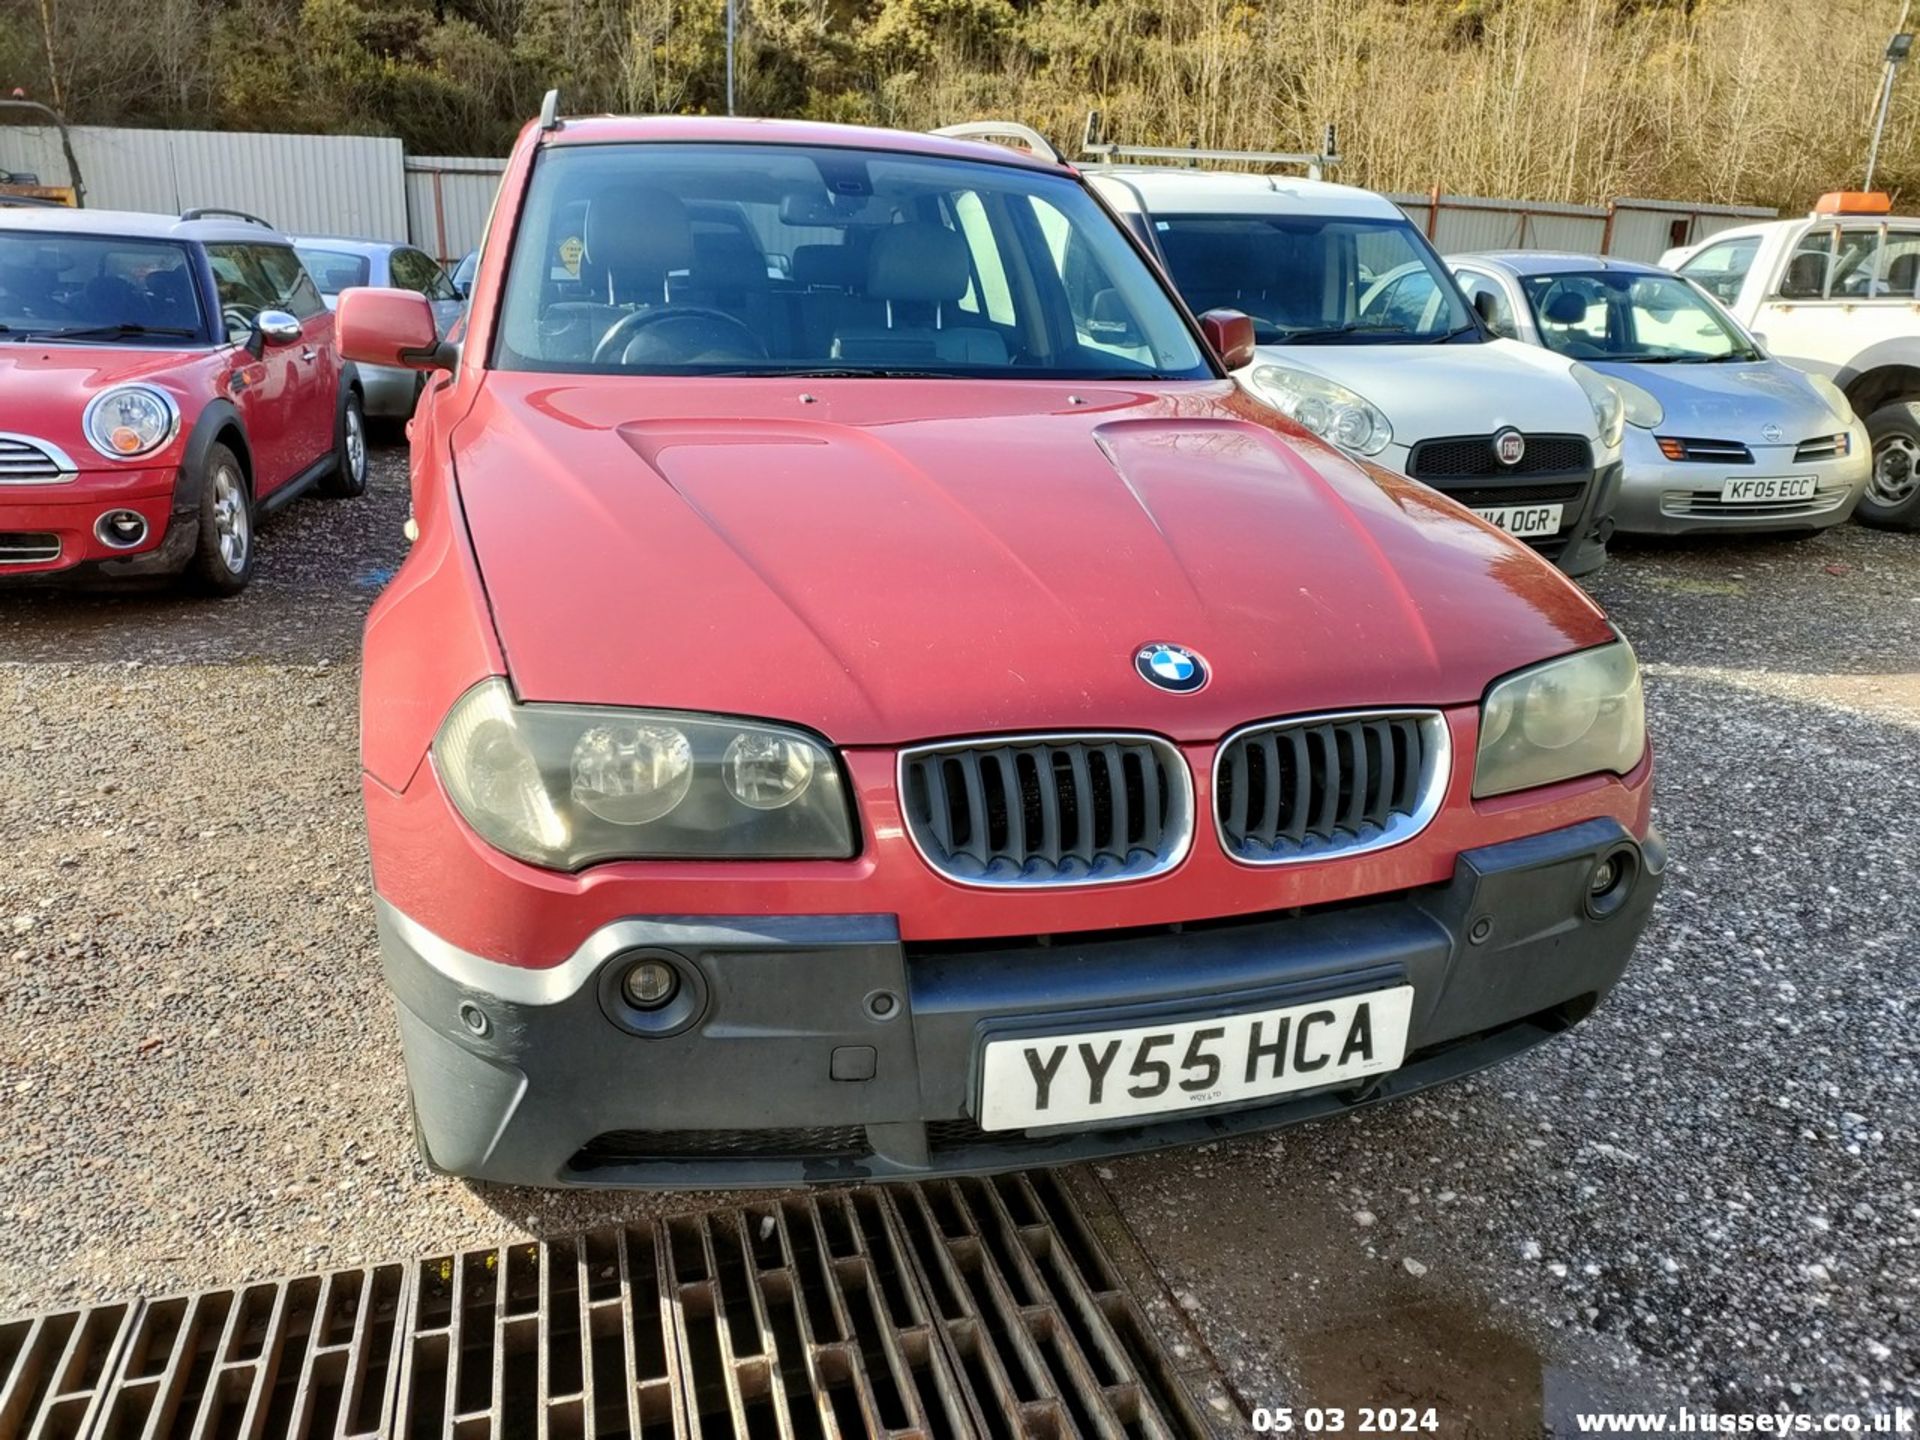 05/55 BMW X3 D SE - 1995cc 5dr Estate (Red, 188k) - Image 23 of 51